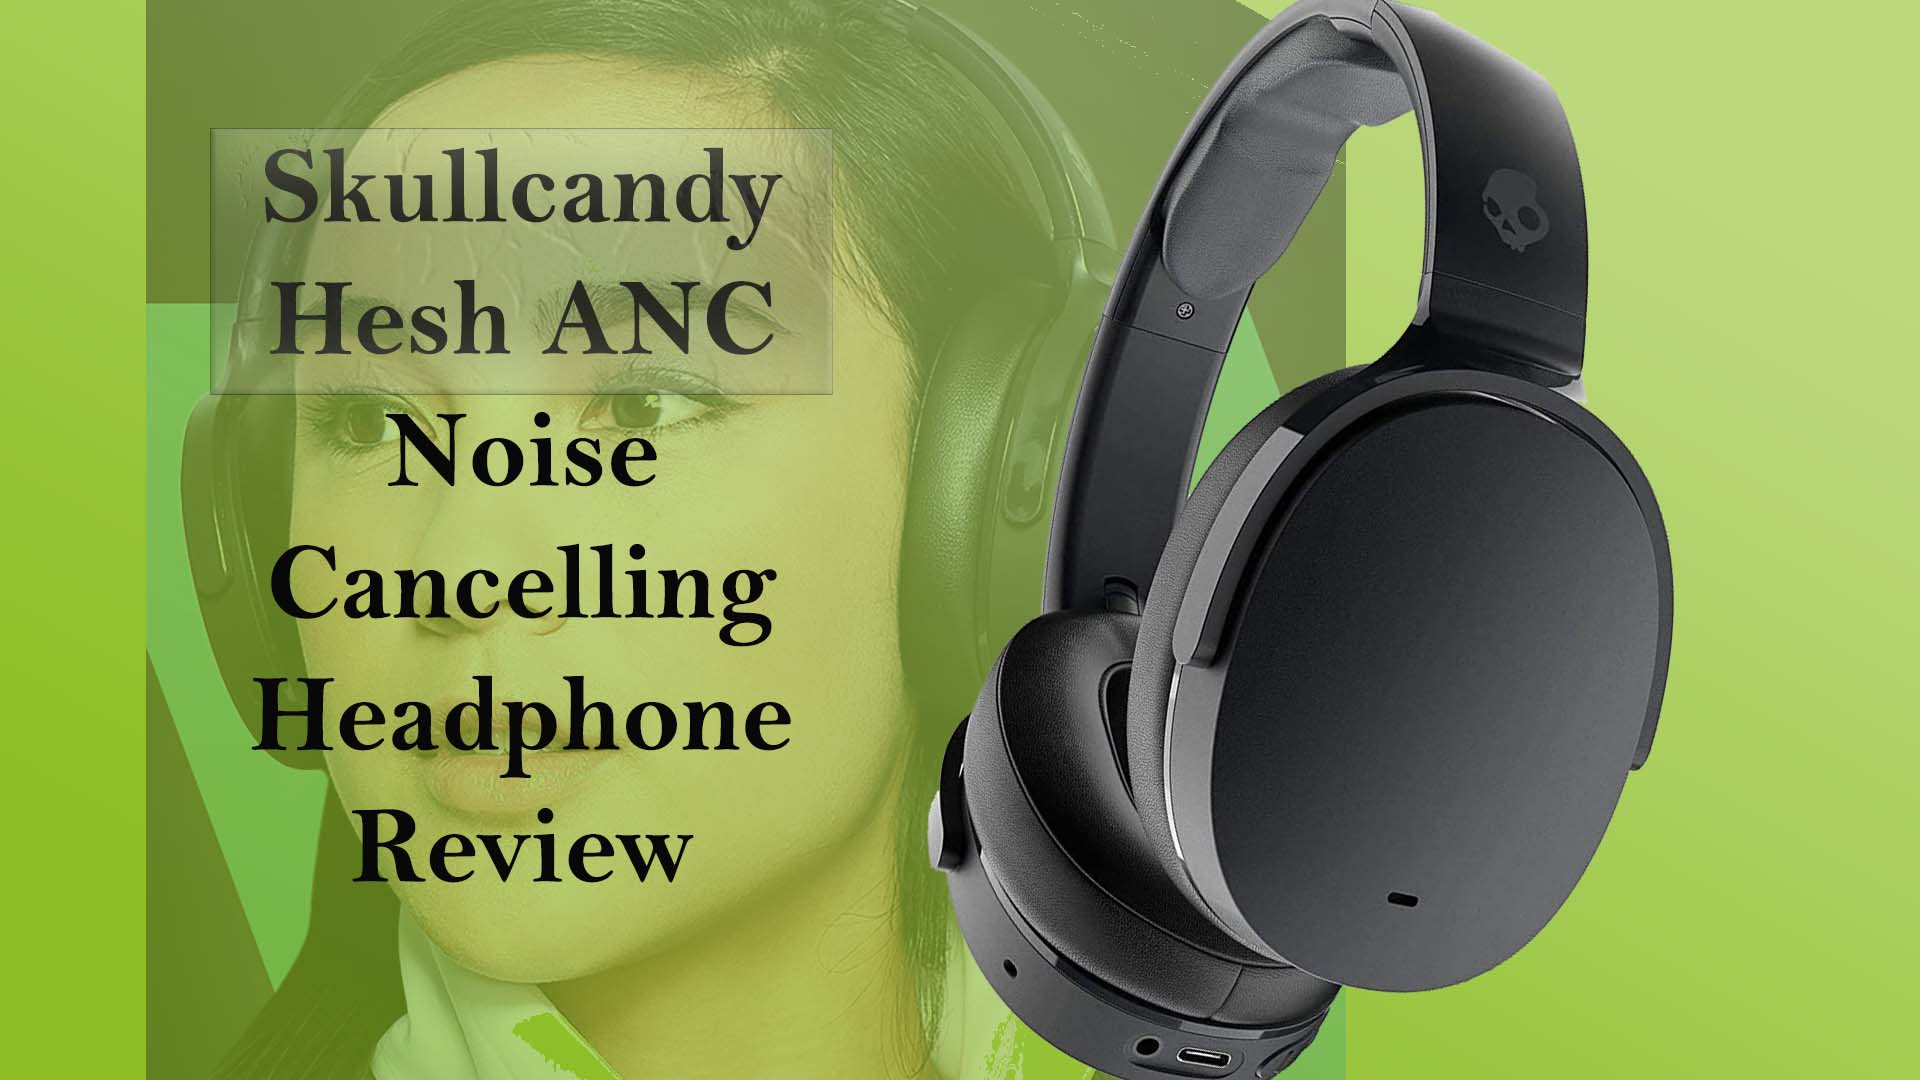 Skullcandy Hesh ANC Over the Ear Noise Canceling Wireless